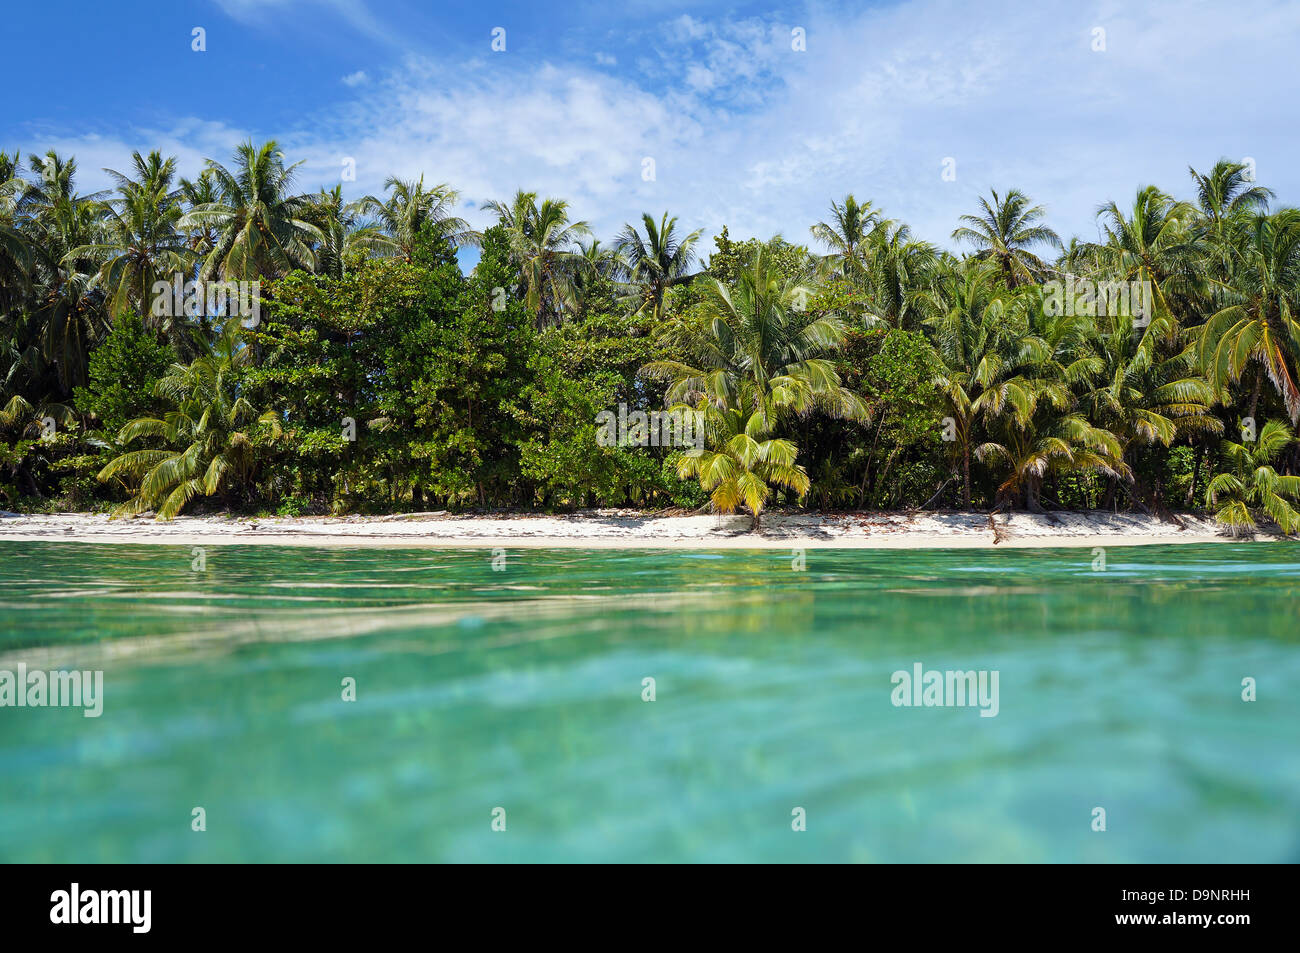 Vista dalla superficie dell'acqua su una spiaggia tropicale con vegetazione lussureggiante, Caraibi, Zapatillas isles, Bocas del Toro, Panama Foto Stock